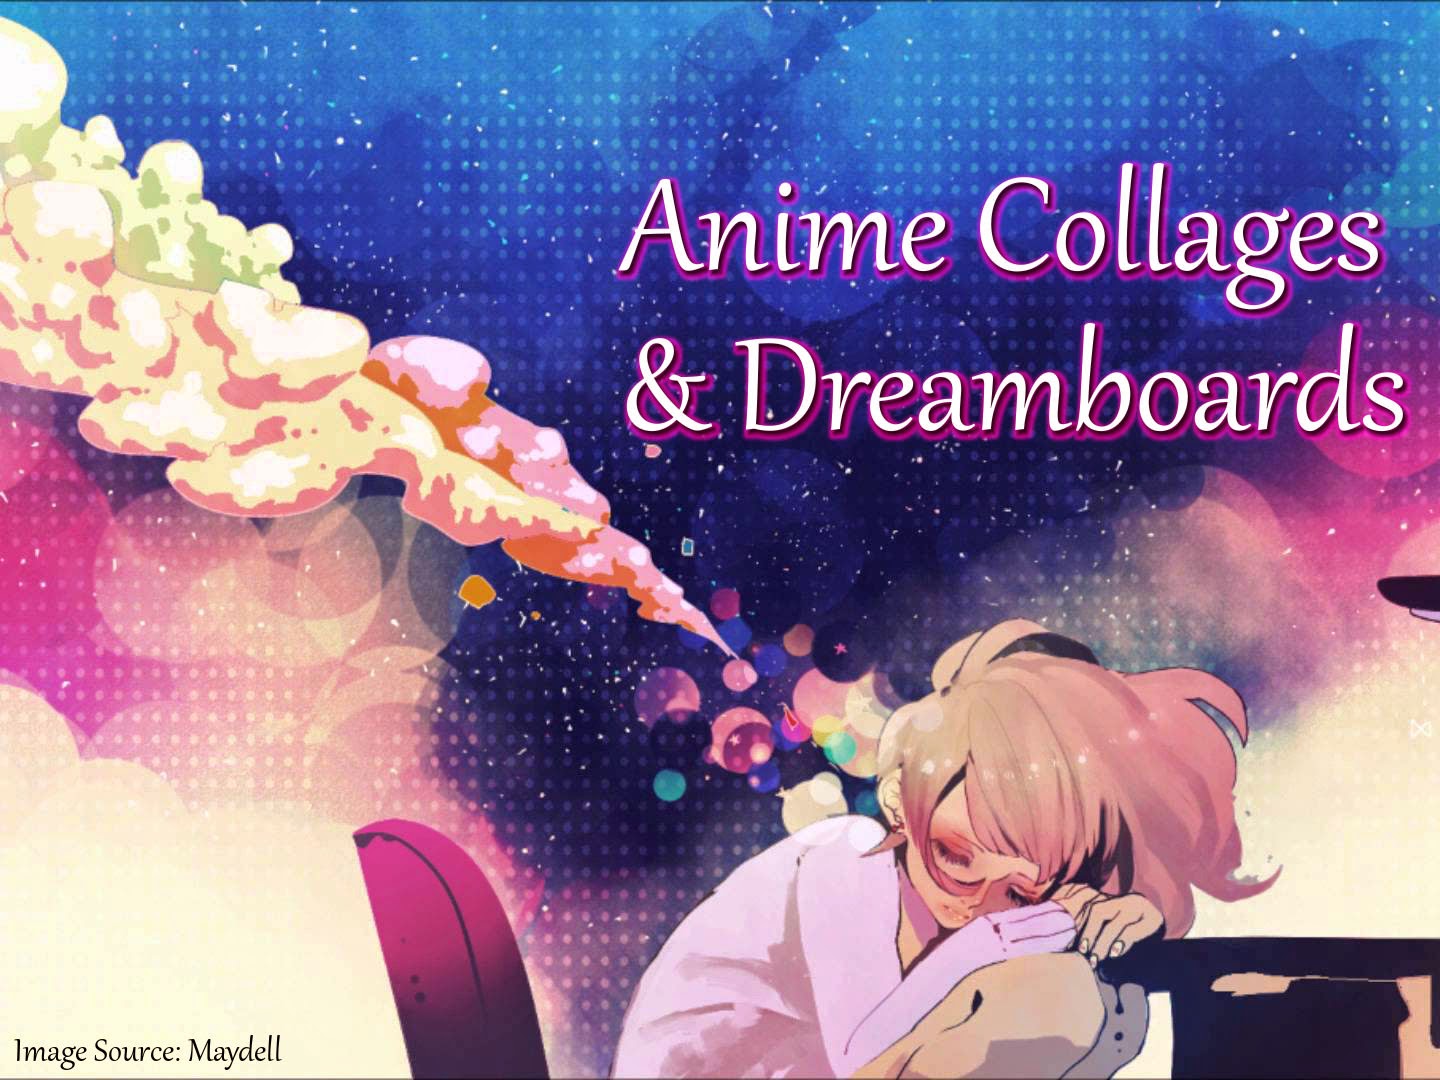 Anime Girl Dreaming